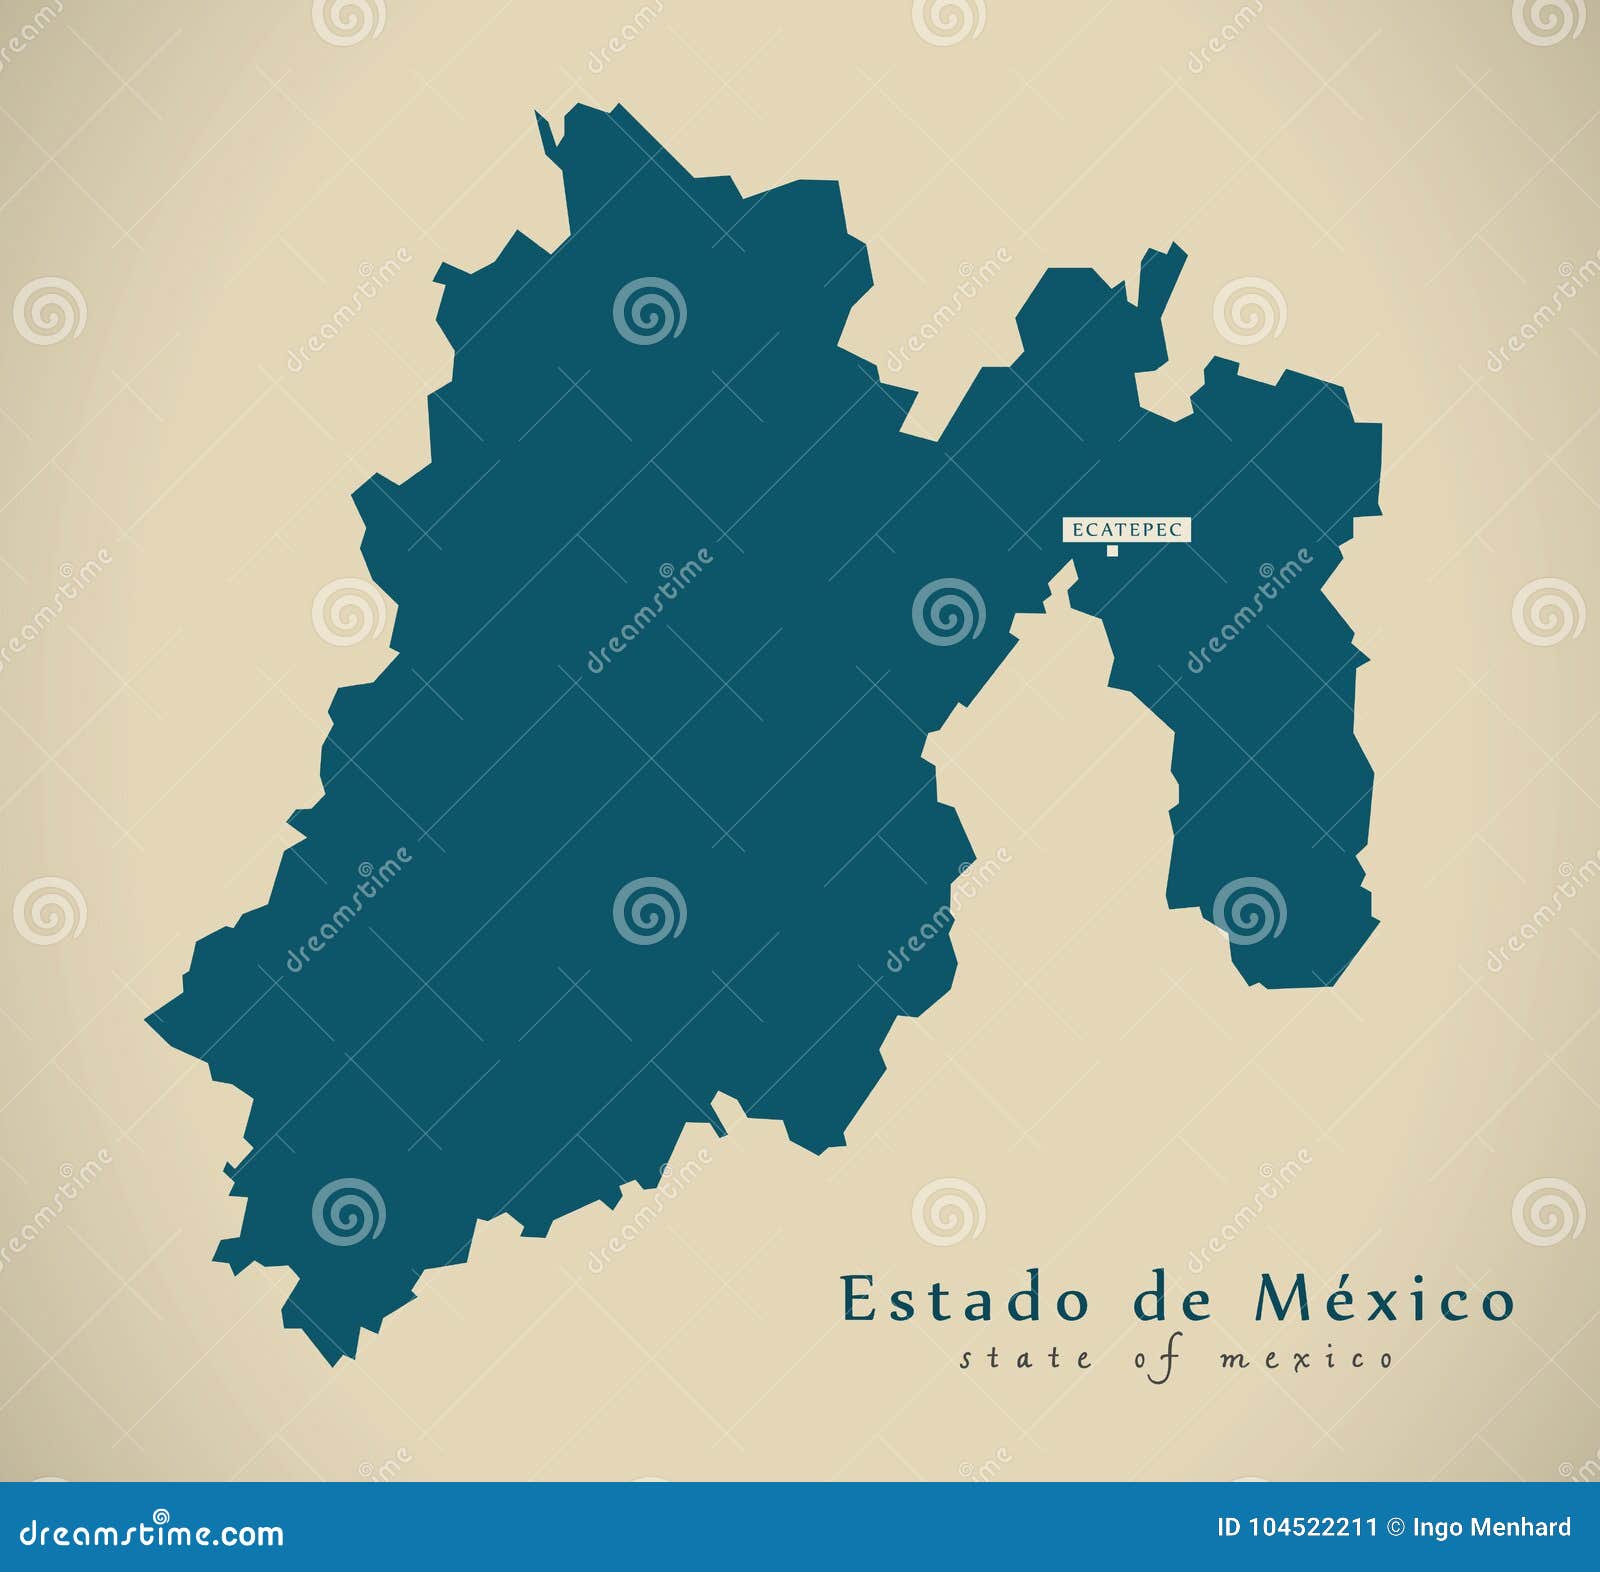 modern map - estado de mexico mexico mx